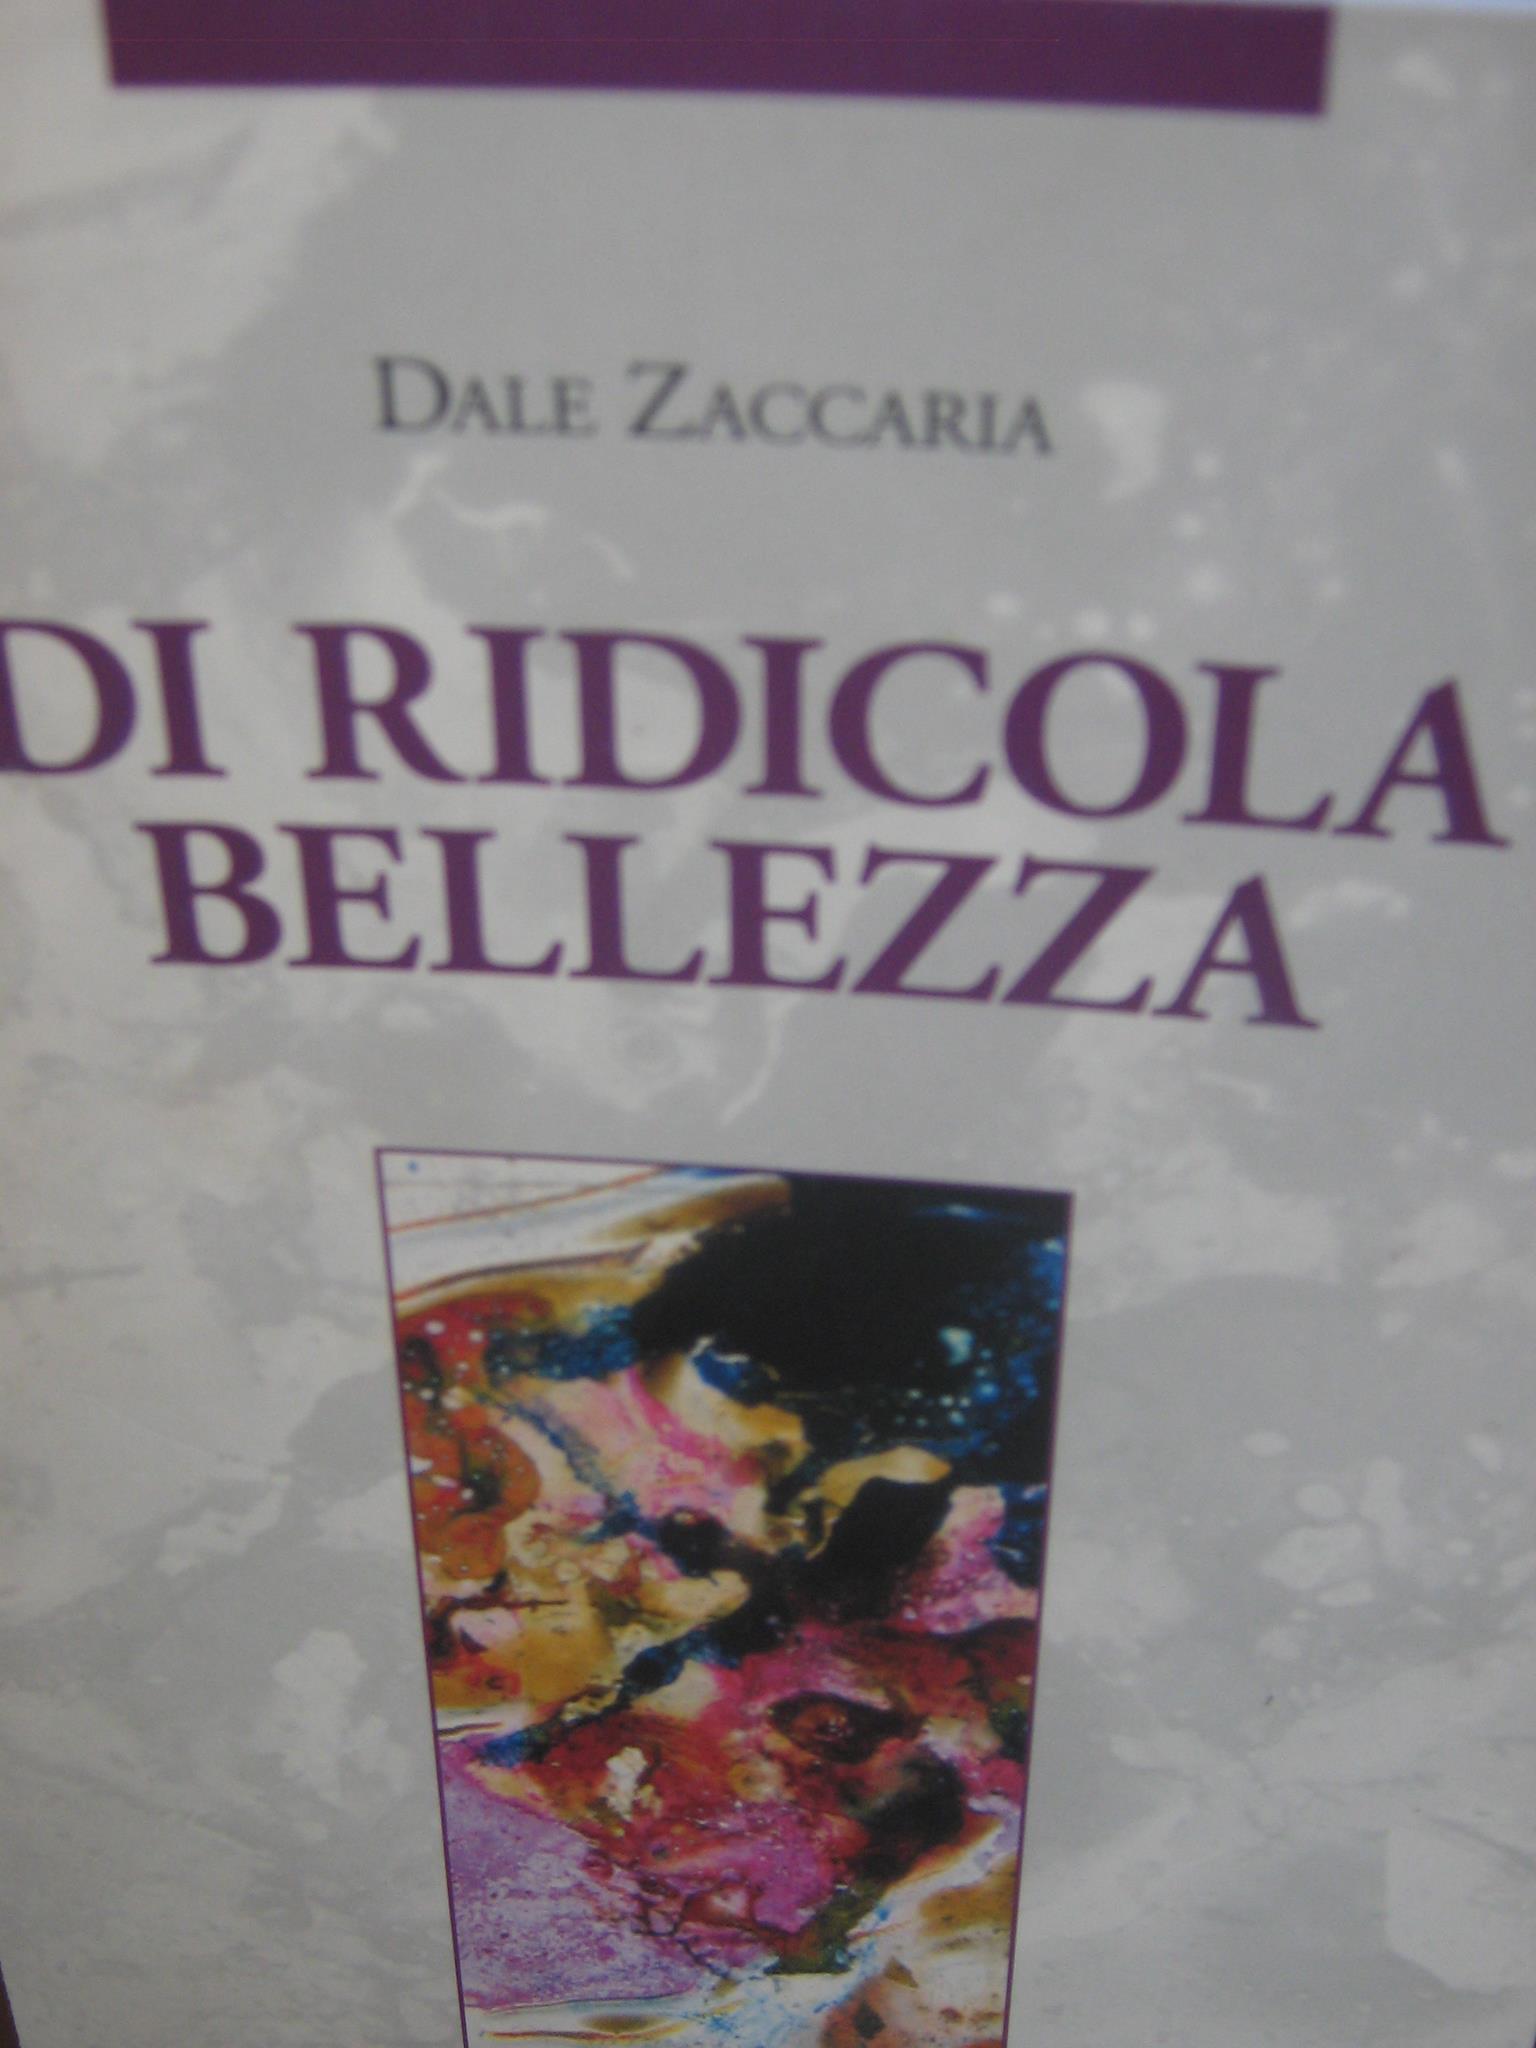 Di Ridicola Bellezza_Dale Zaccaria